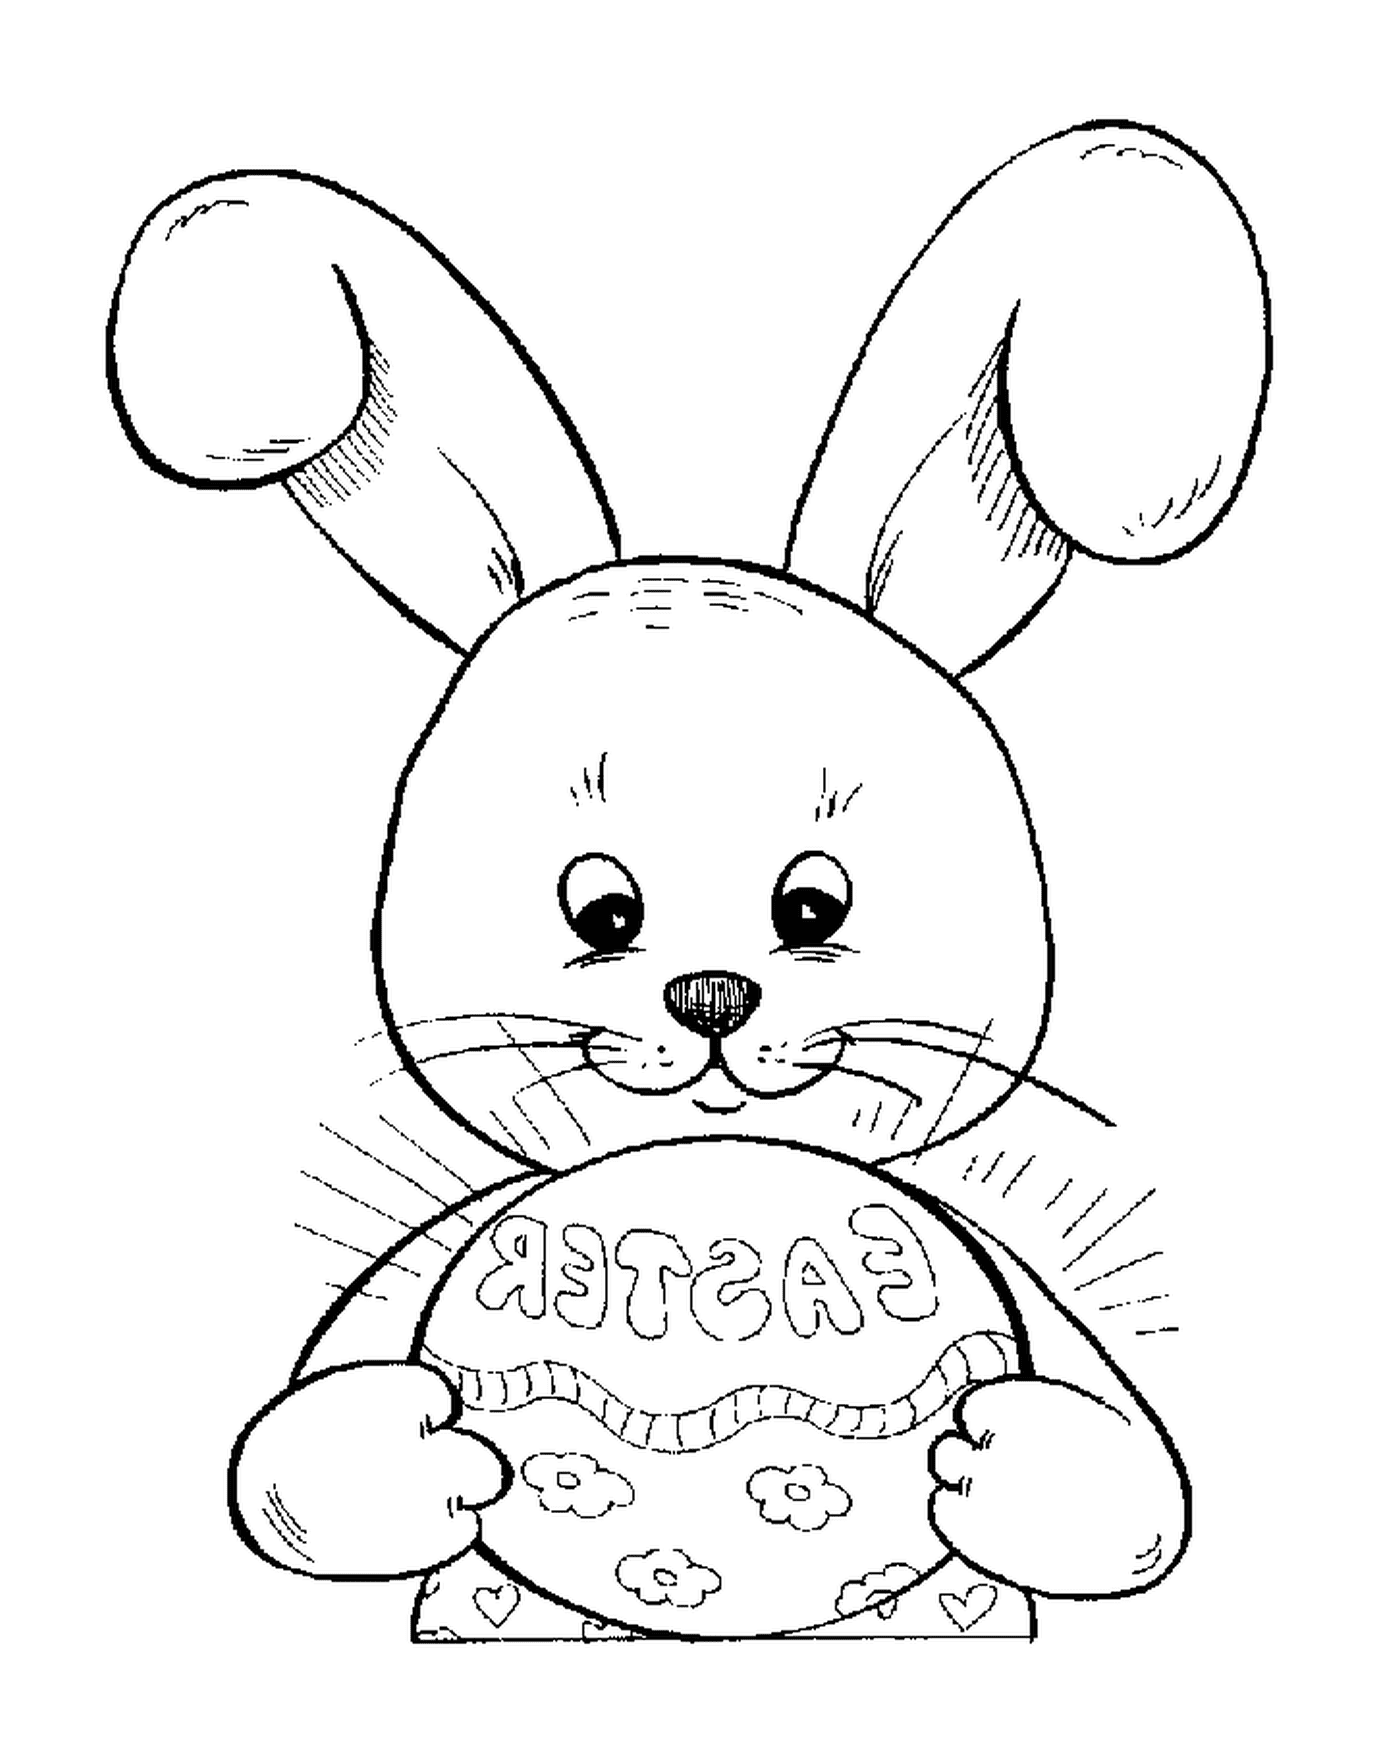  एक ईस्टर खरगोश एक ईस्टर अंडे धारण करता है 